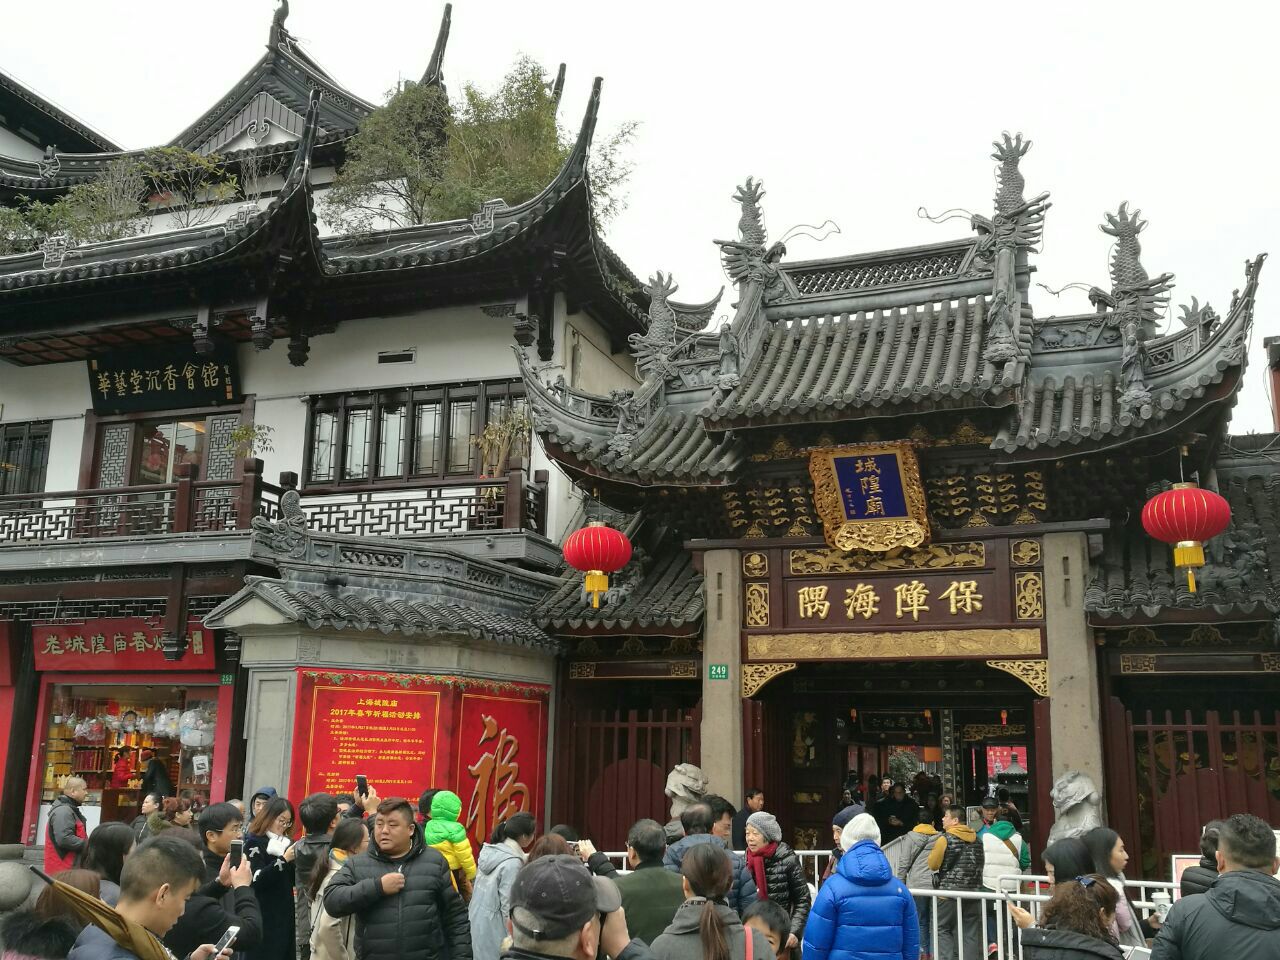 上海城隍庙之《古建筑篇》 - 柯达 Z7590 样张 - PConline数码相机样张库